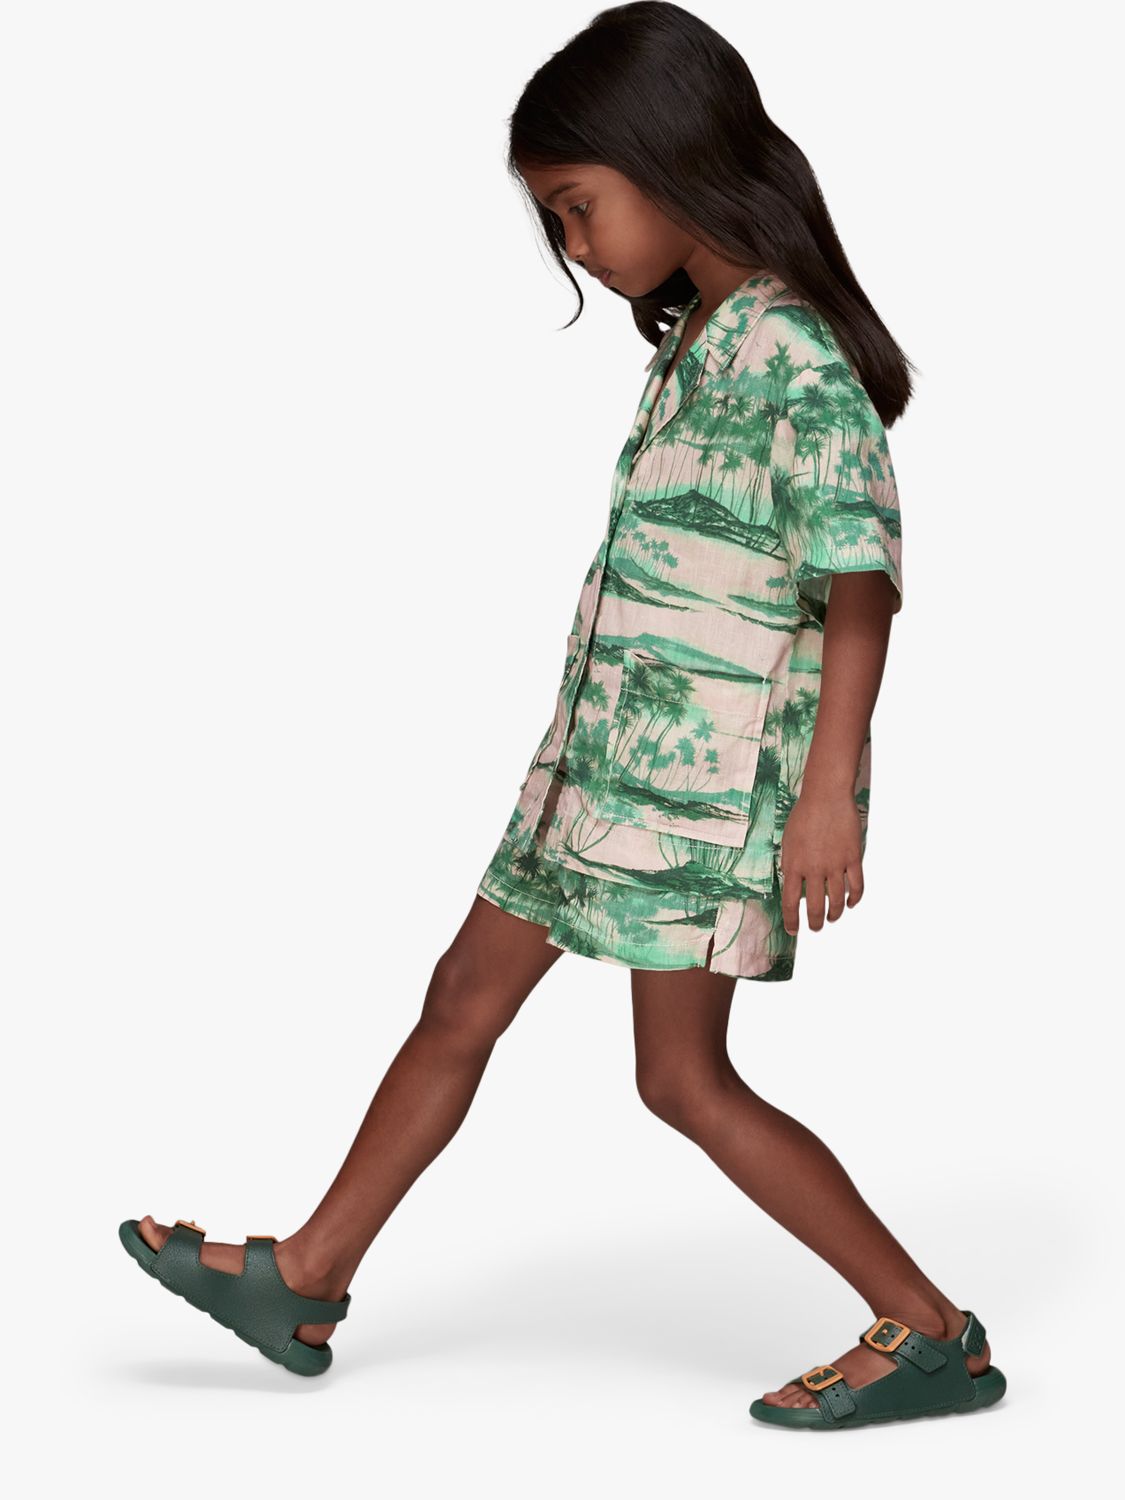 Whistles Kids' Sammy Waving Palms Shorts, Pink/Multi, 5-6 years